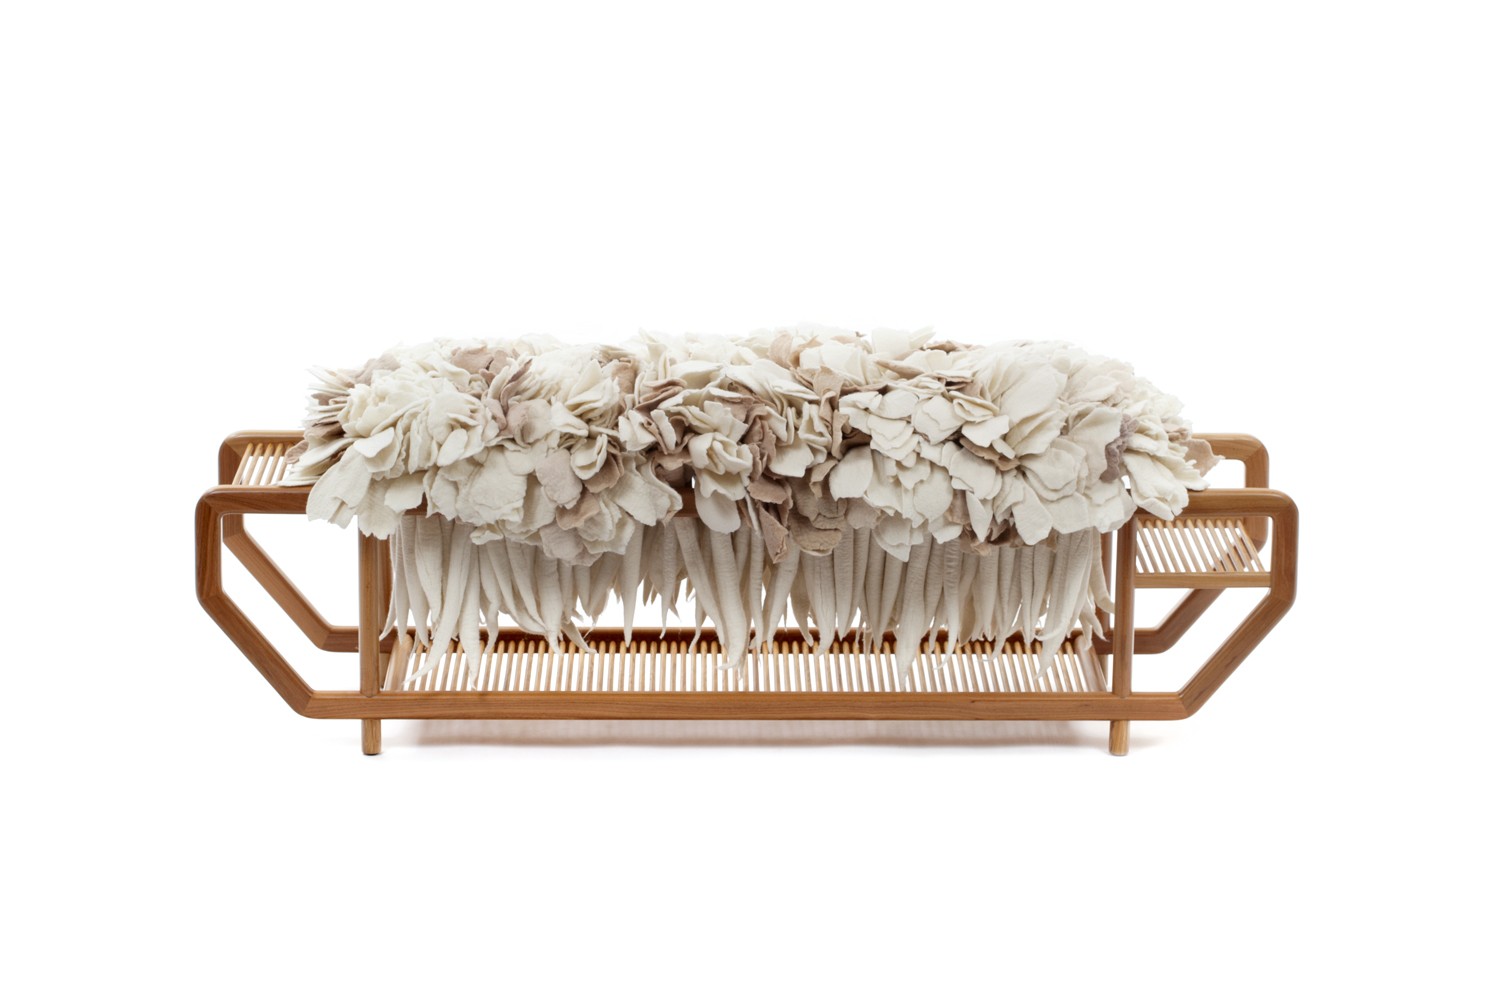 Nova coleção de móveis coloca a lã e a madeira em harmoniosa combinação (Foto: Fernando Laszlo)